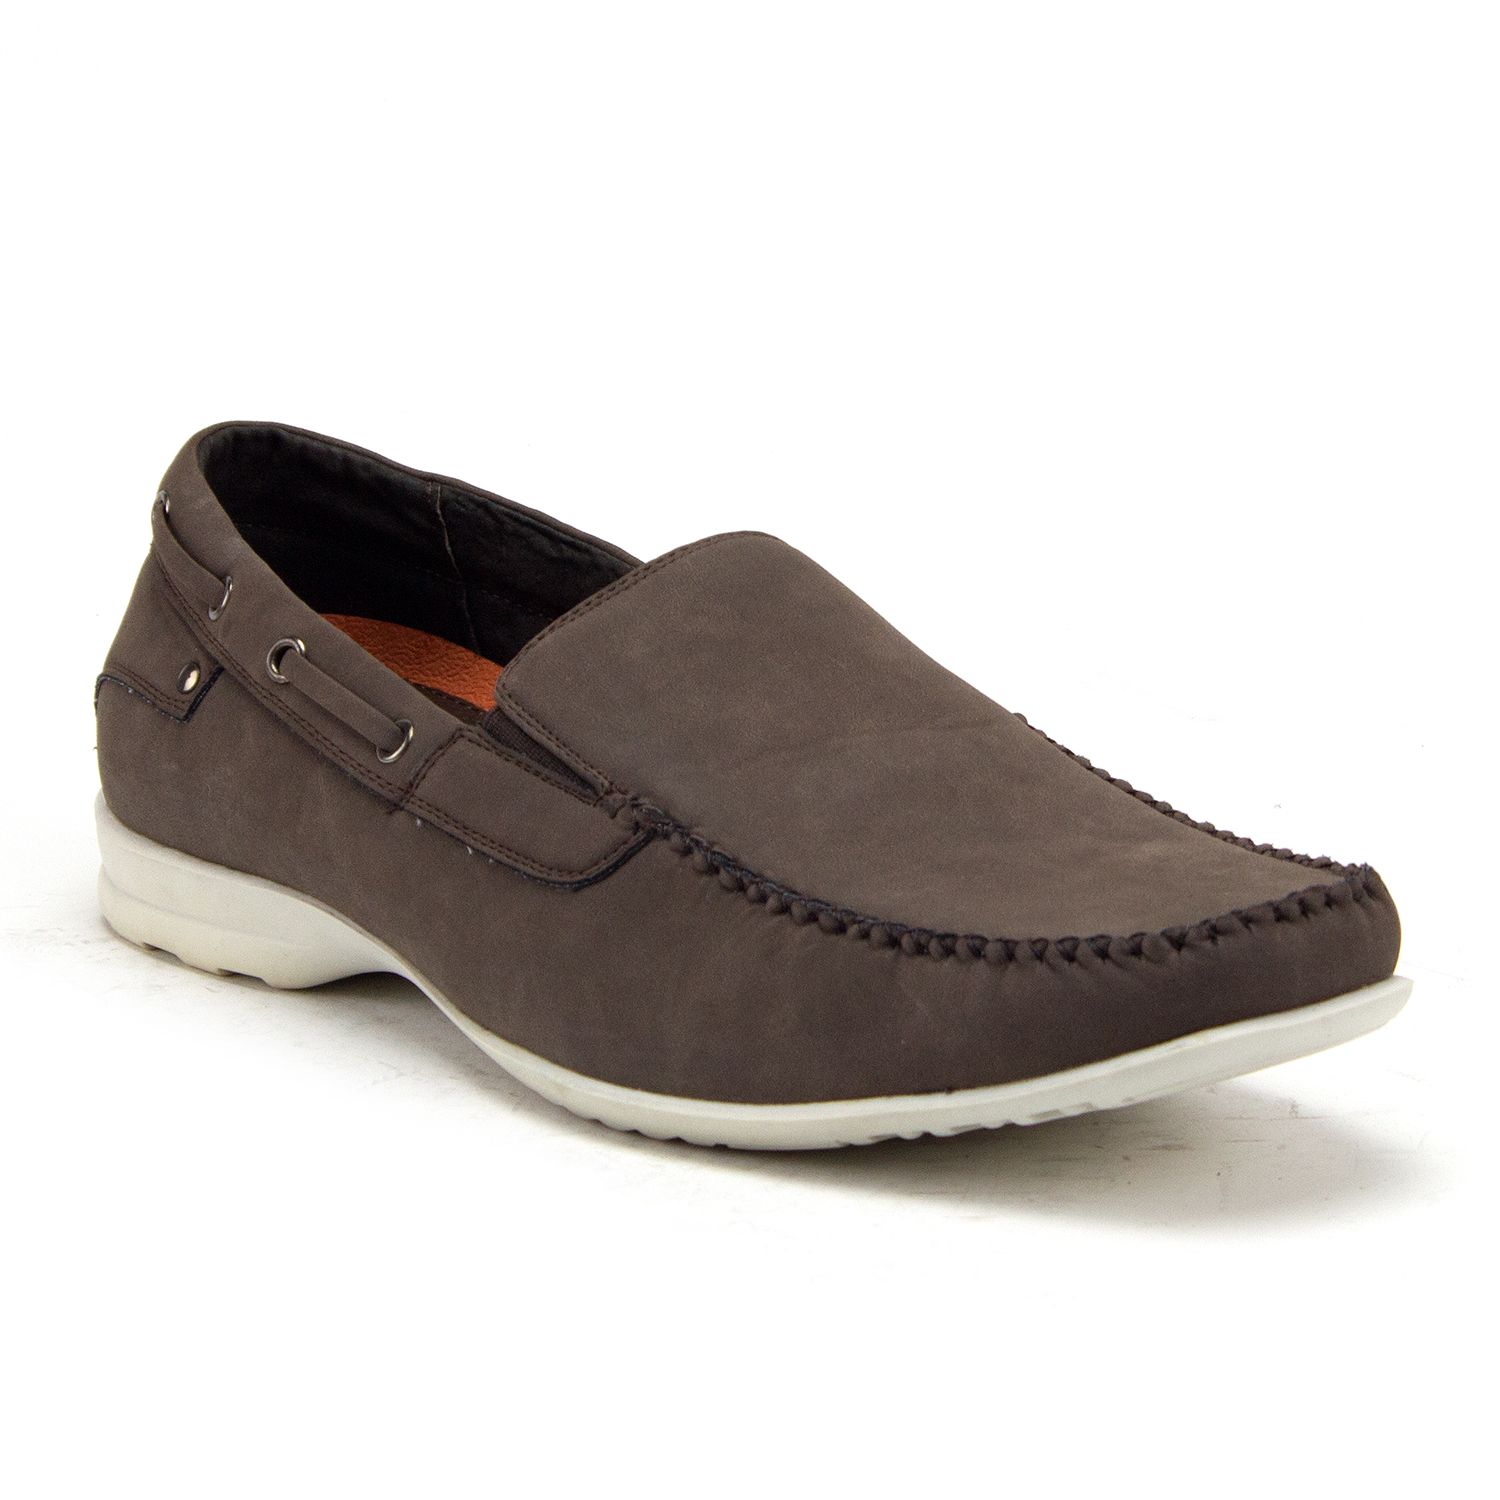 Jazamé Men's 41190 Slip On Moccasin Loafer Boat Shoes, Brown, 11 - image 1 of 3